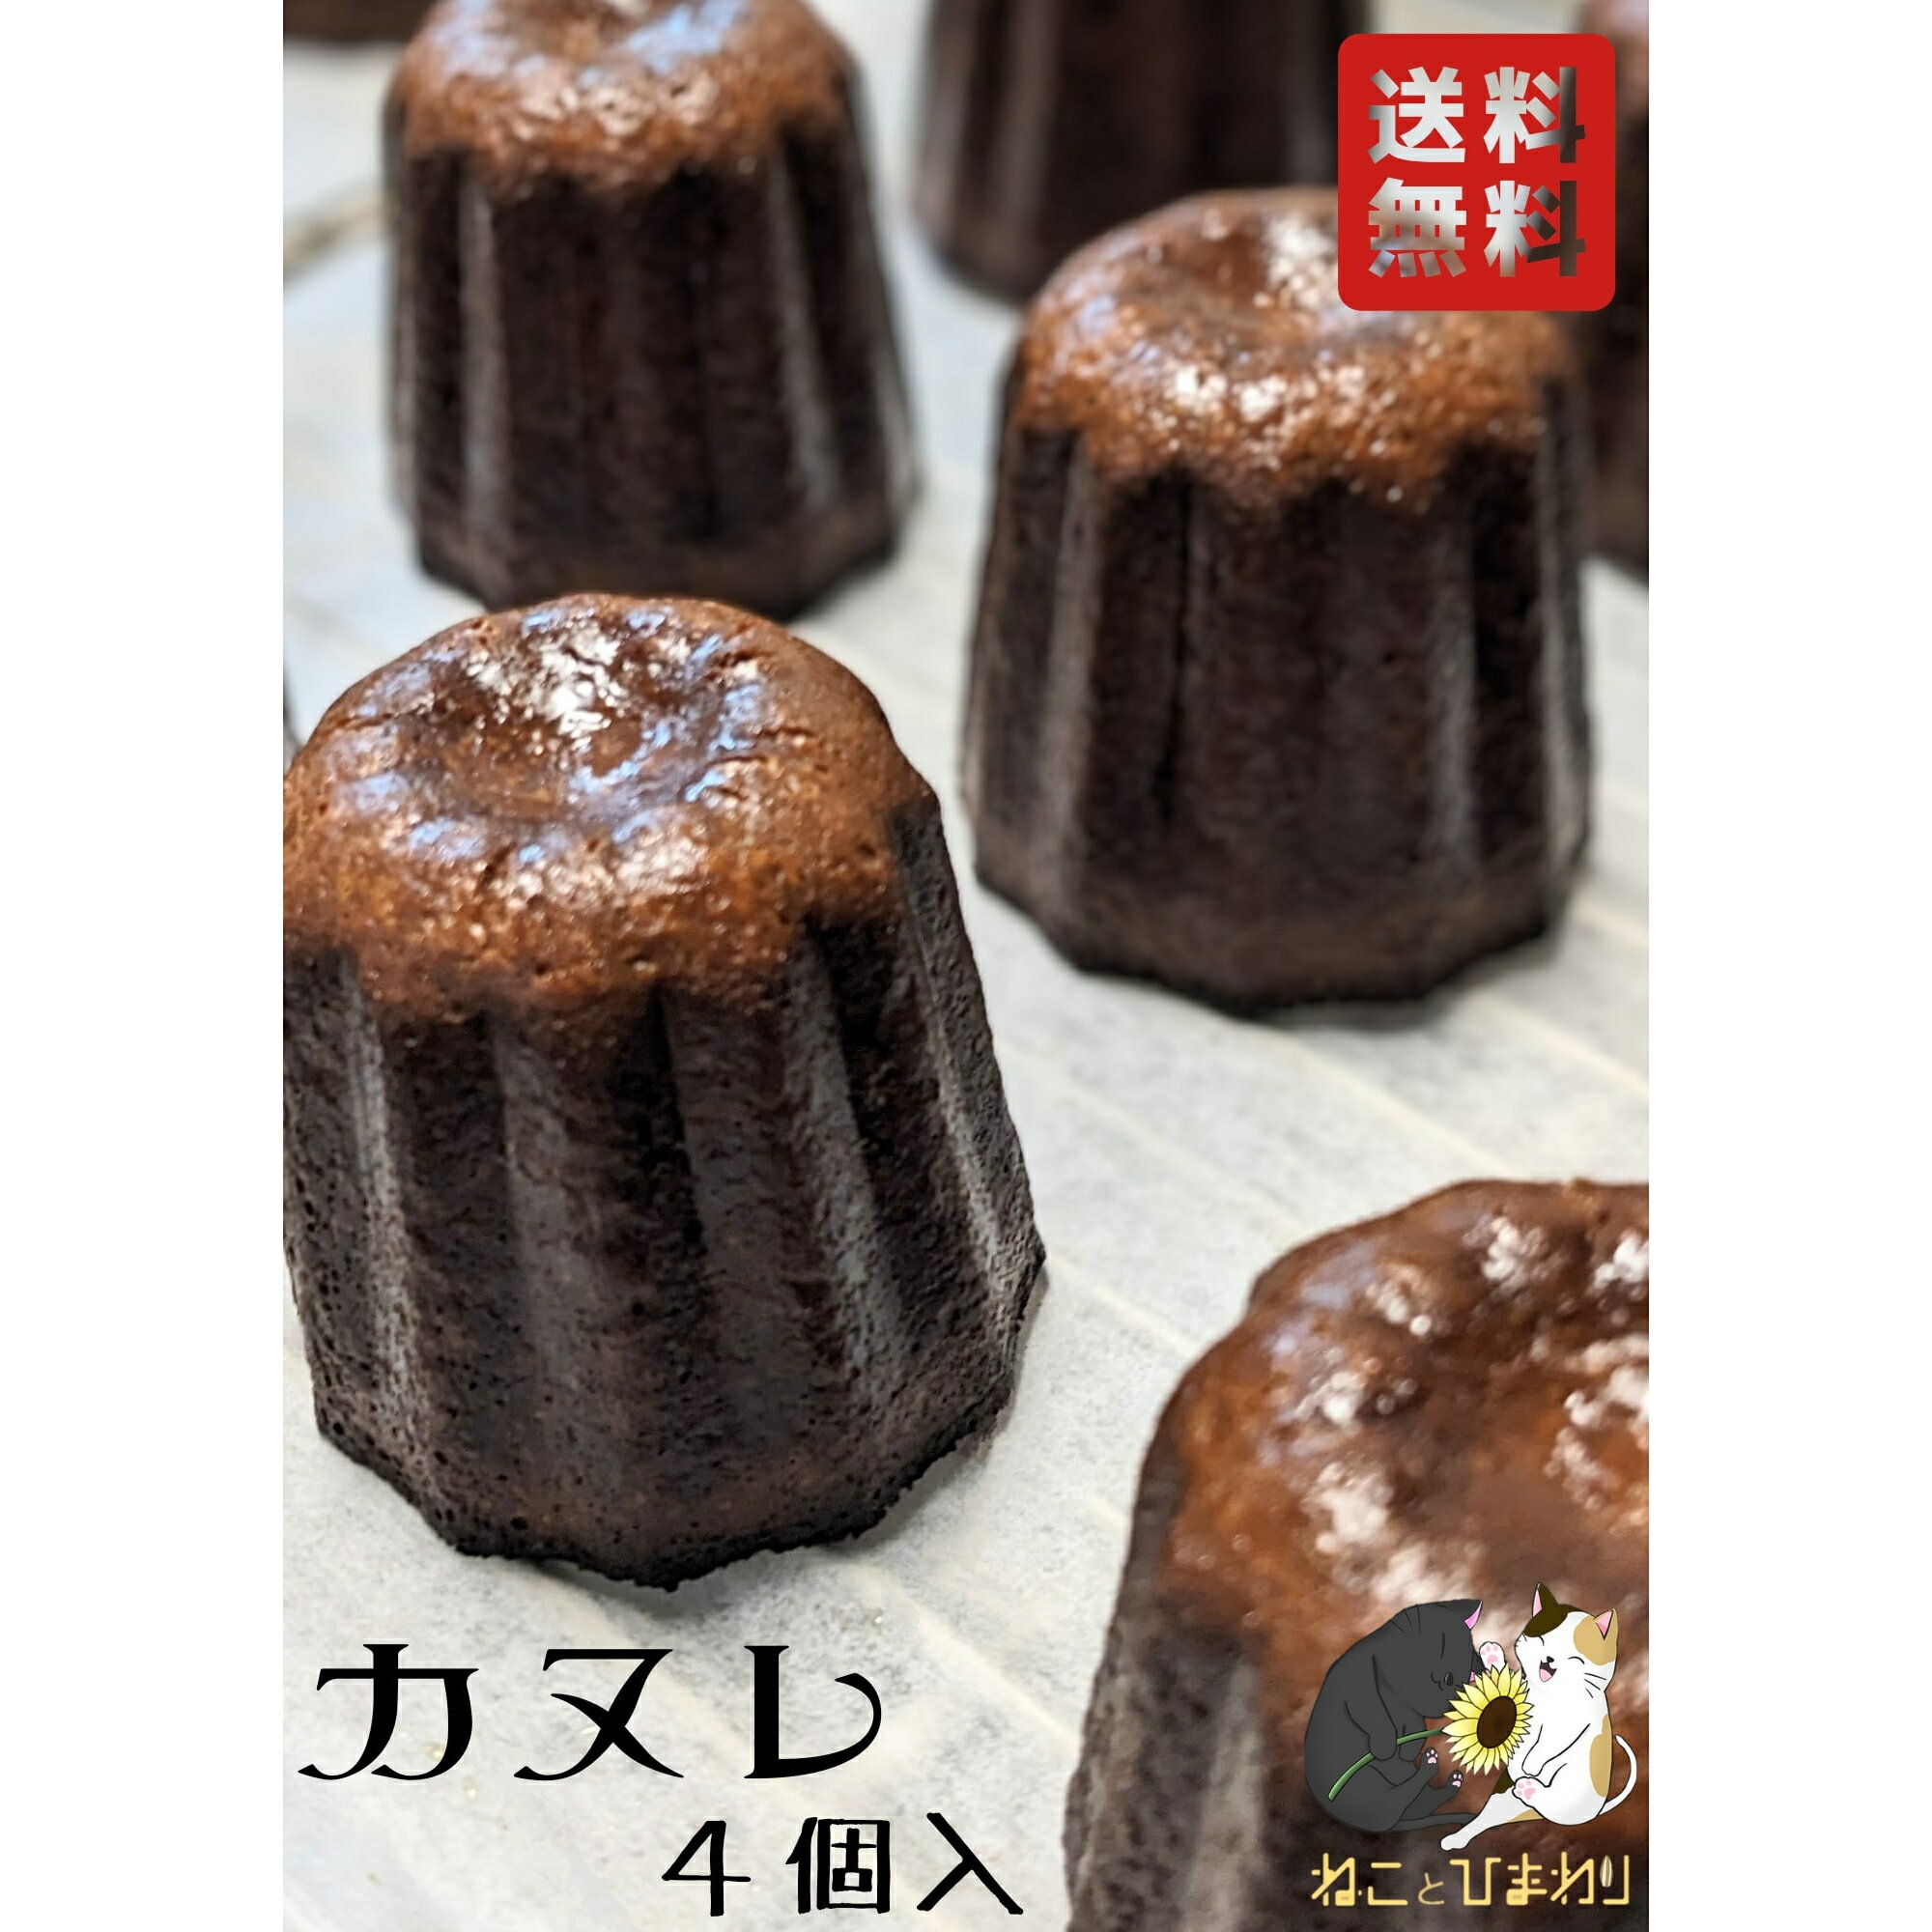 【 ねこ と ひまわり】 カヌレ 4個 洋酒不使用 無添加 カリカリ もちもち バニラ 洋菓子 焼き菓子 菓子